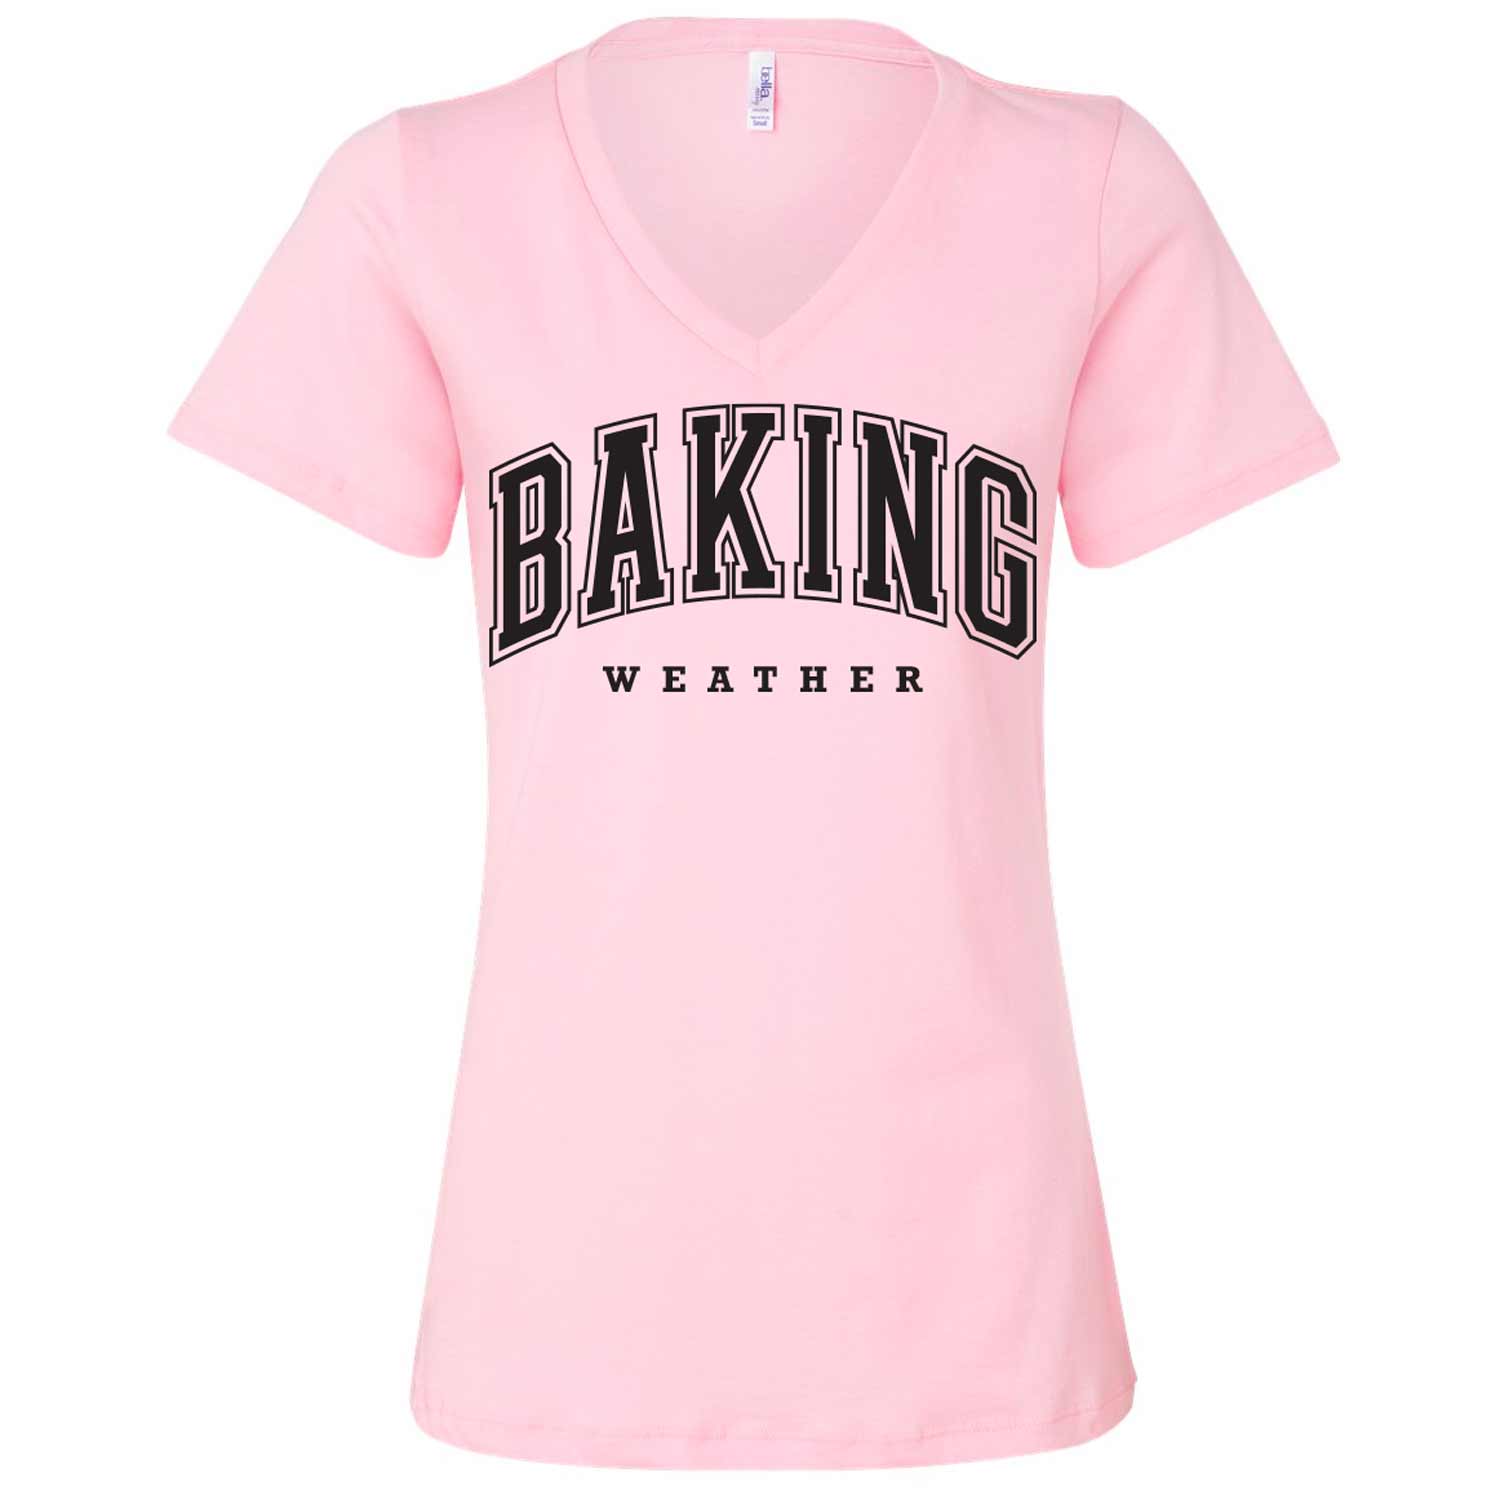 Baking Weather Black Ink Ladies V-Neck T-Shirt